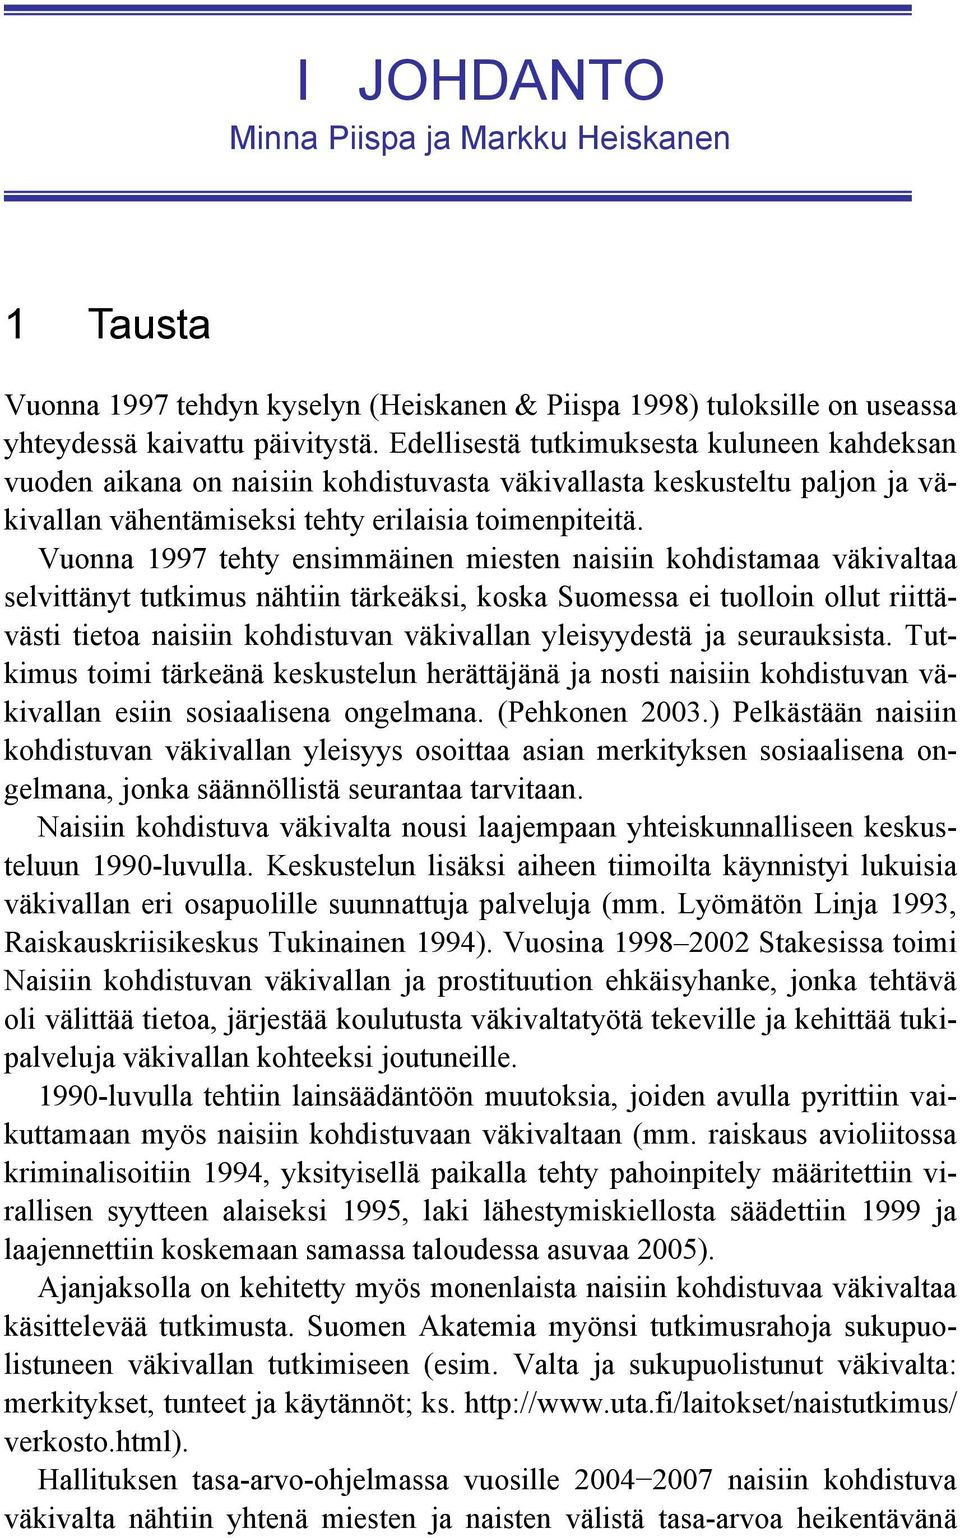 Vuonna 1997 tehty ensimmäinen miesten naisiin kohdistamaa väkivaltaa selvittänyt tutkimus nähtiin tärkeäksi, koska Suomessa ei tuolloin ollut riittävästi tietoa naisiin kohdistuvan väkivallan